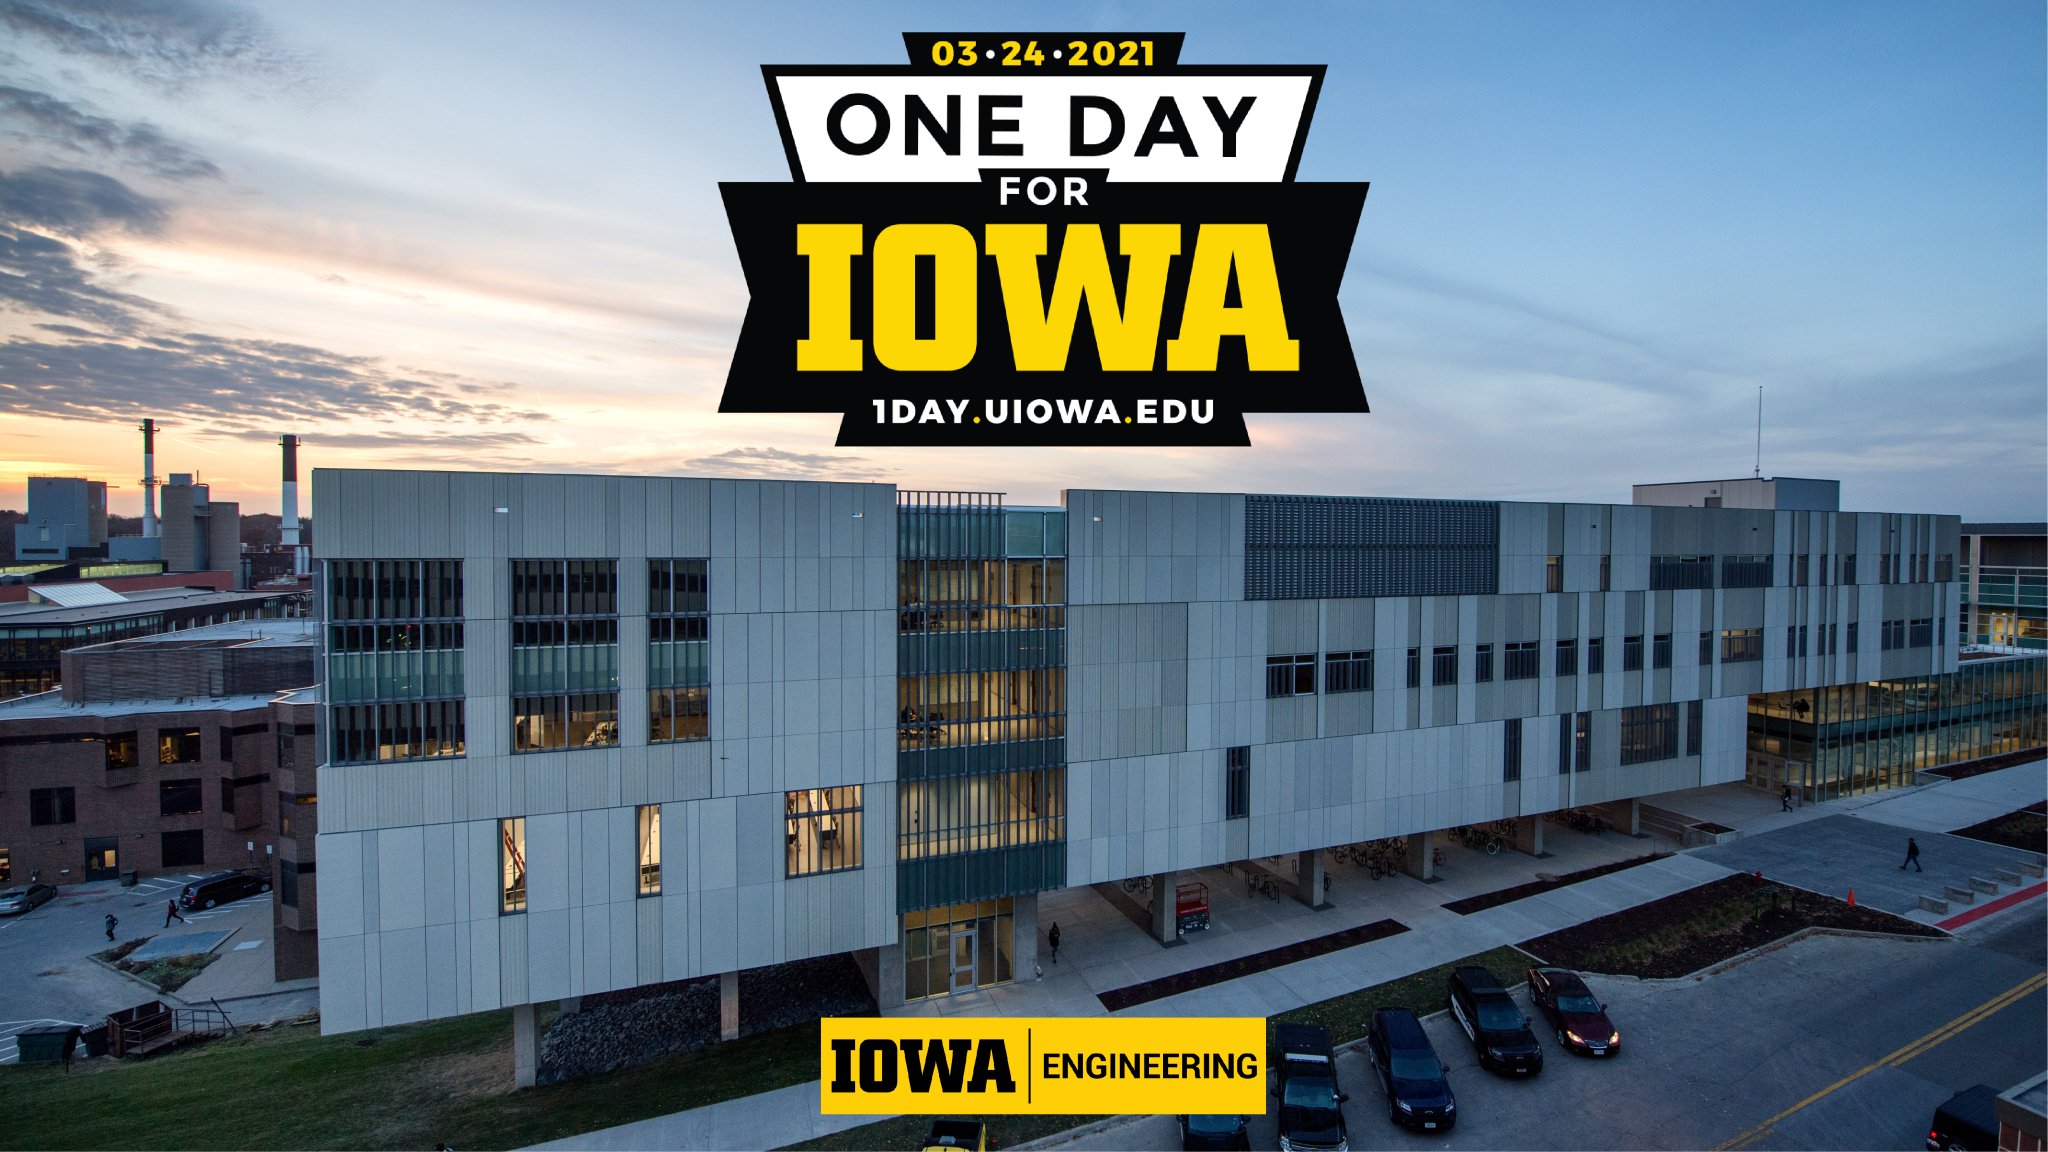 UIowa Engineering on Twitter "One Day for Iowa, uiowa's 24hour